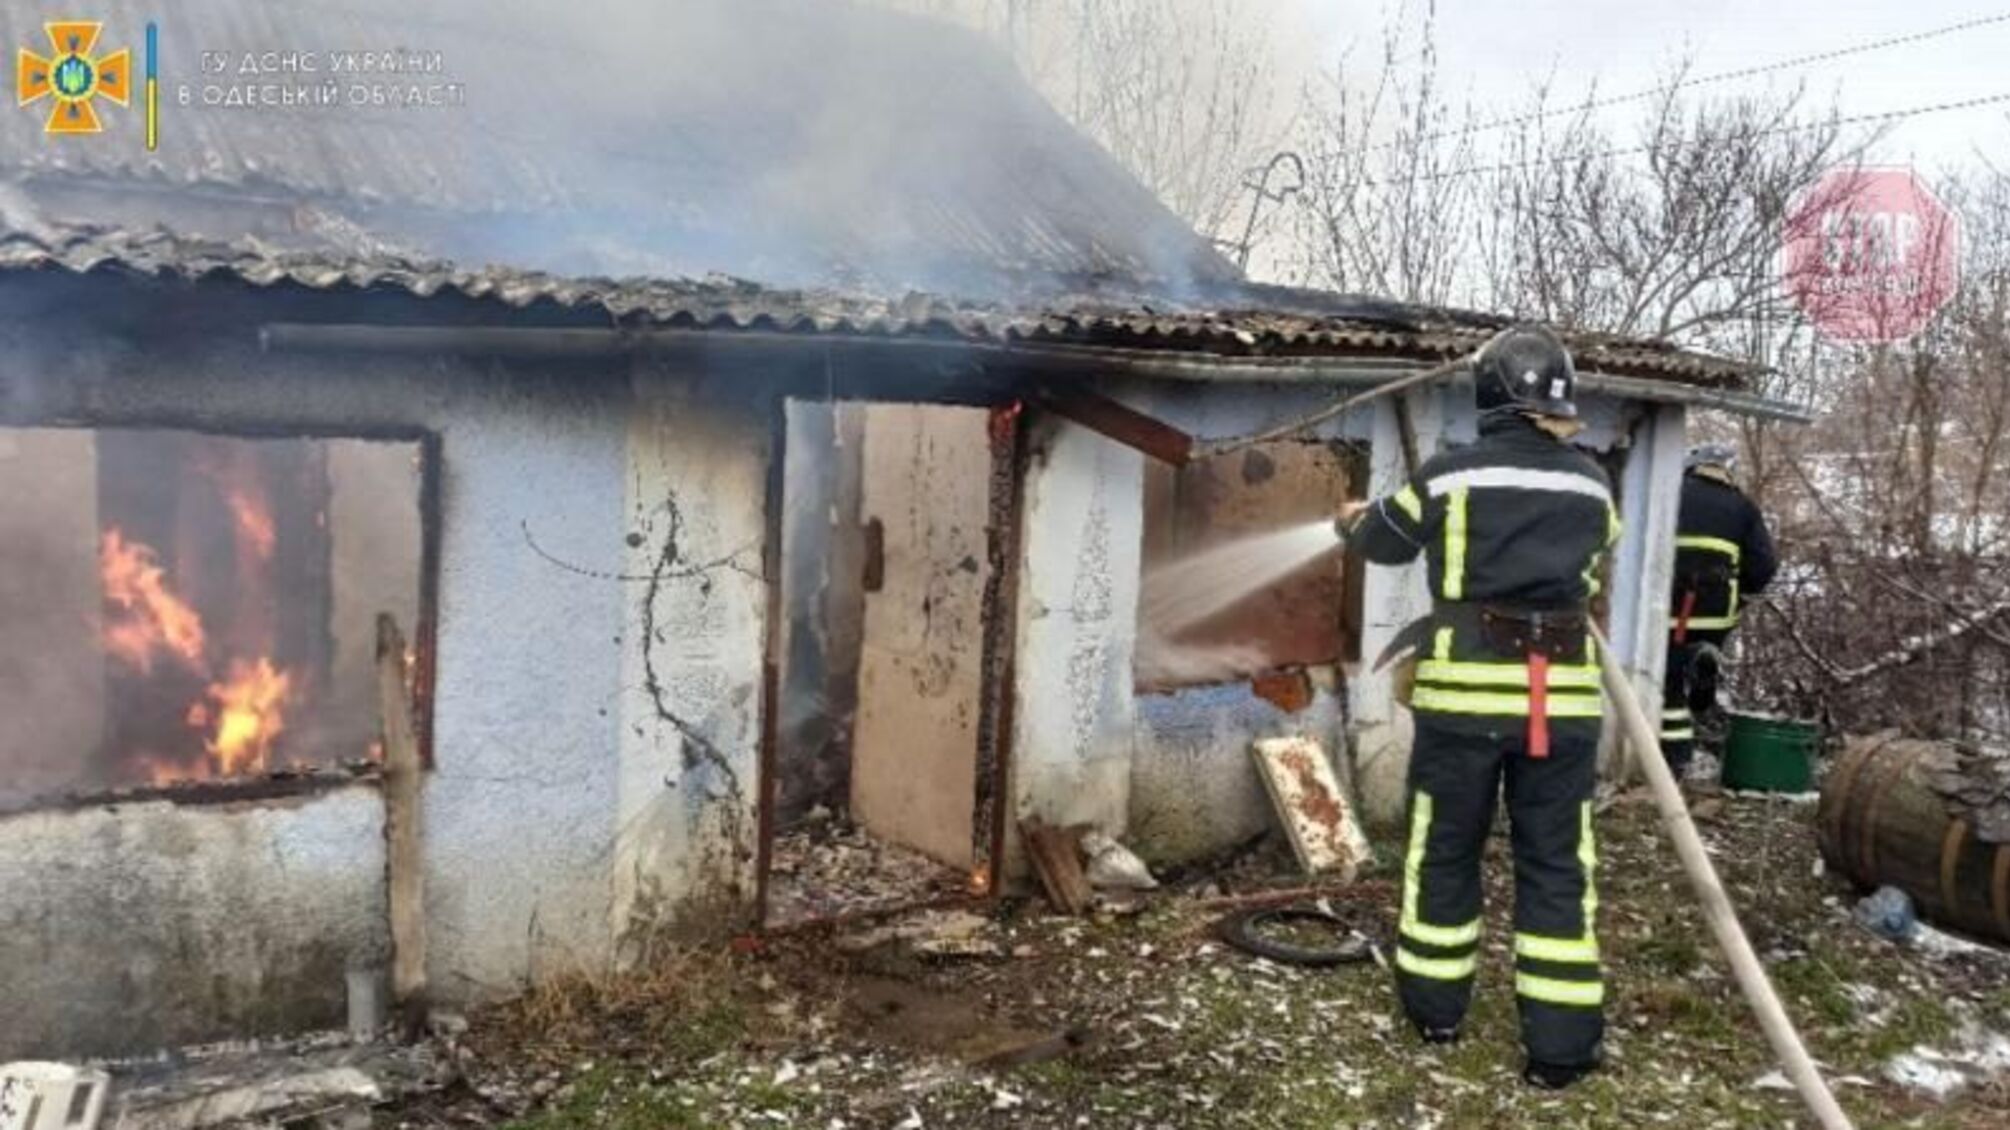 В Одесской области произошел пожар из-за сигареты, есть погибшие (фото)